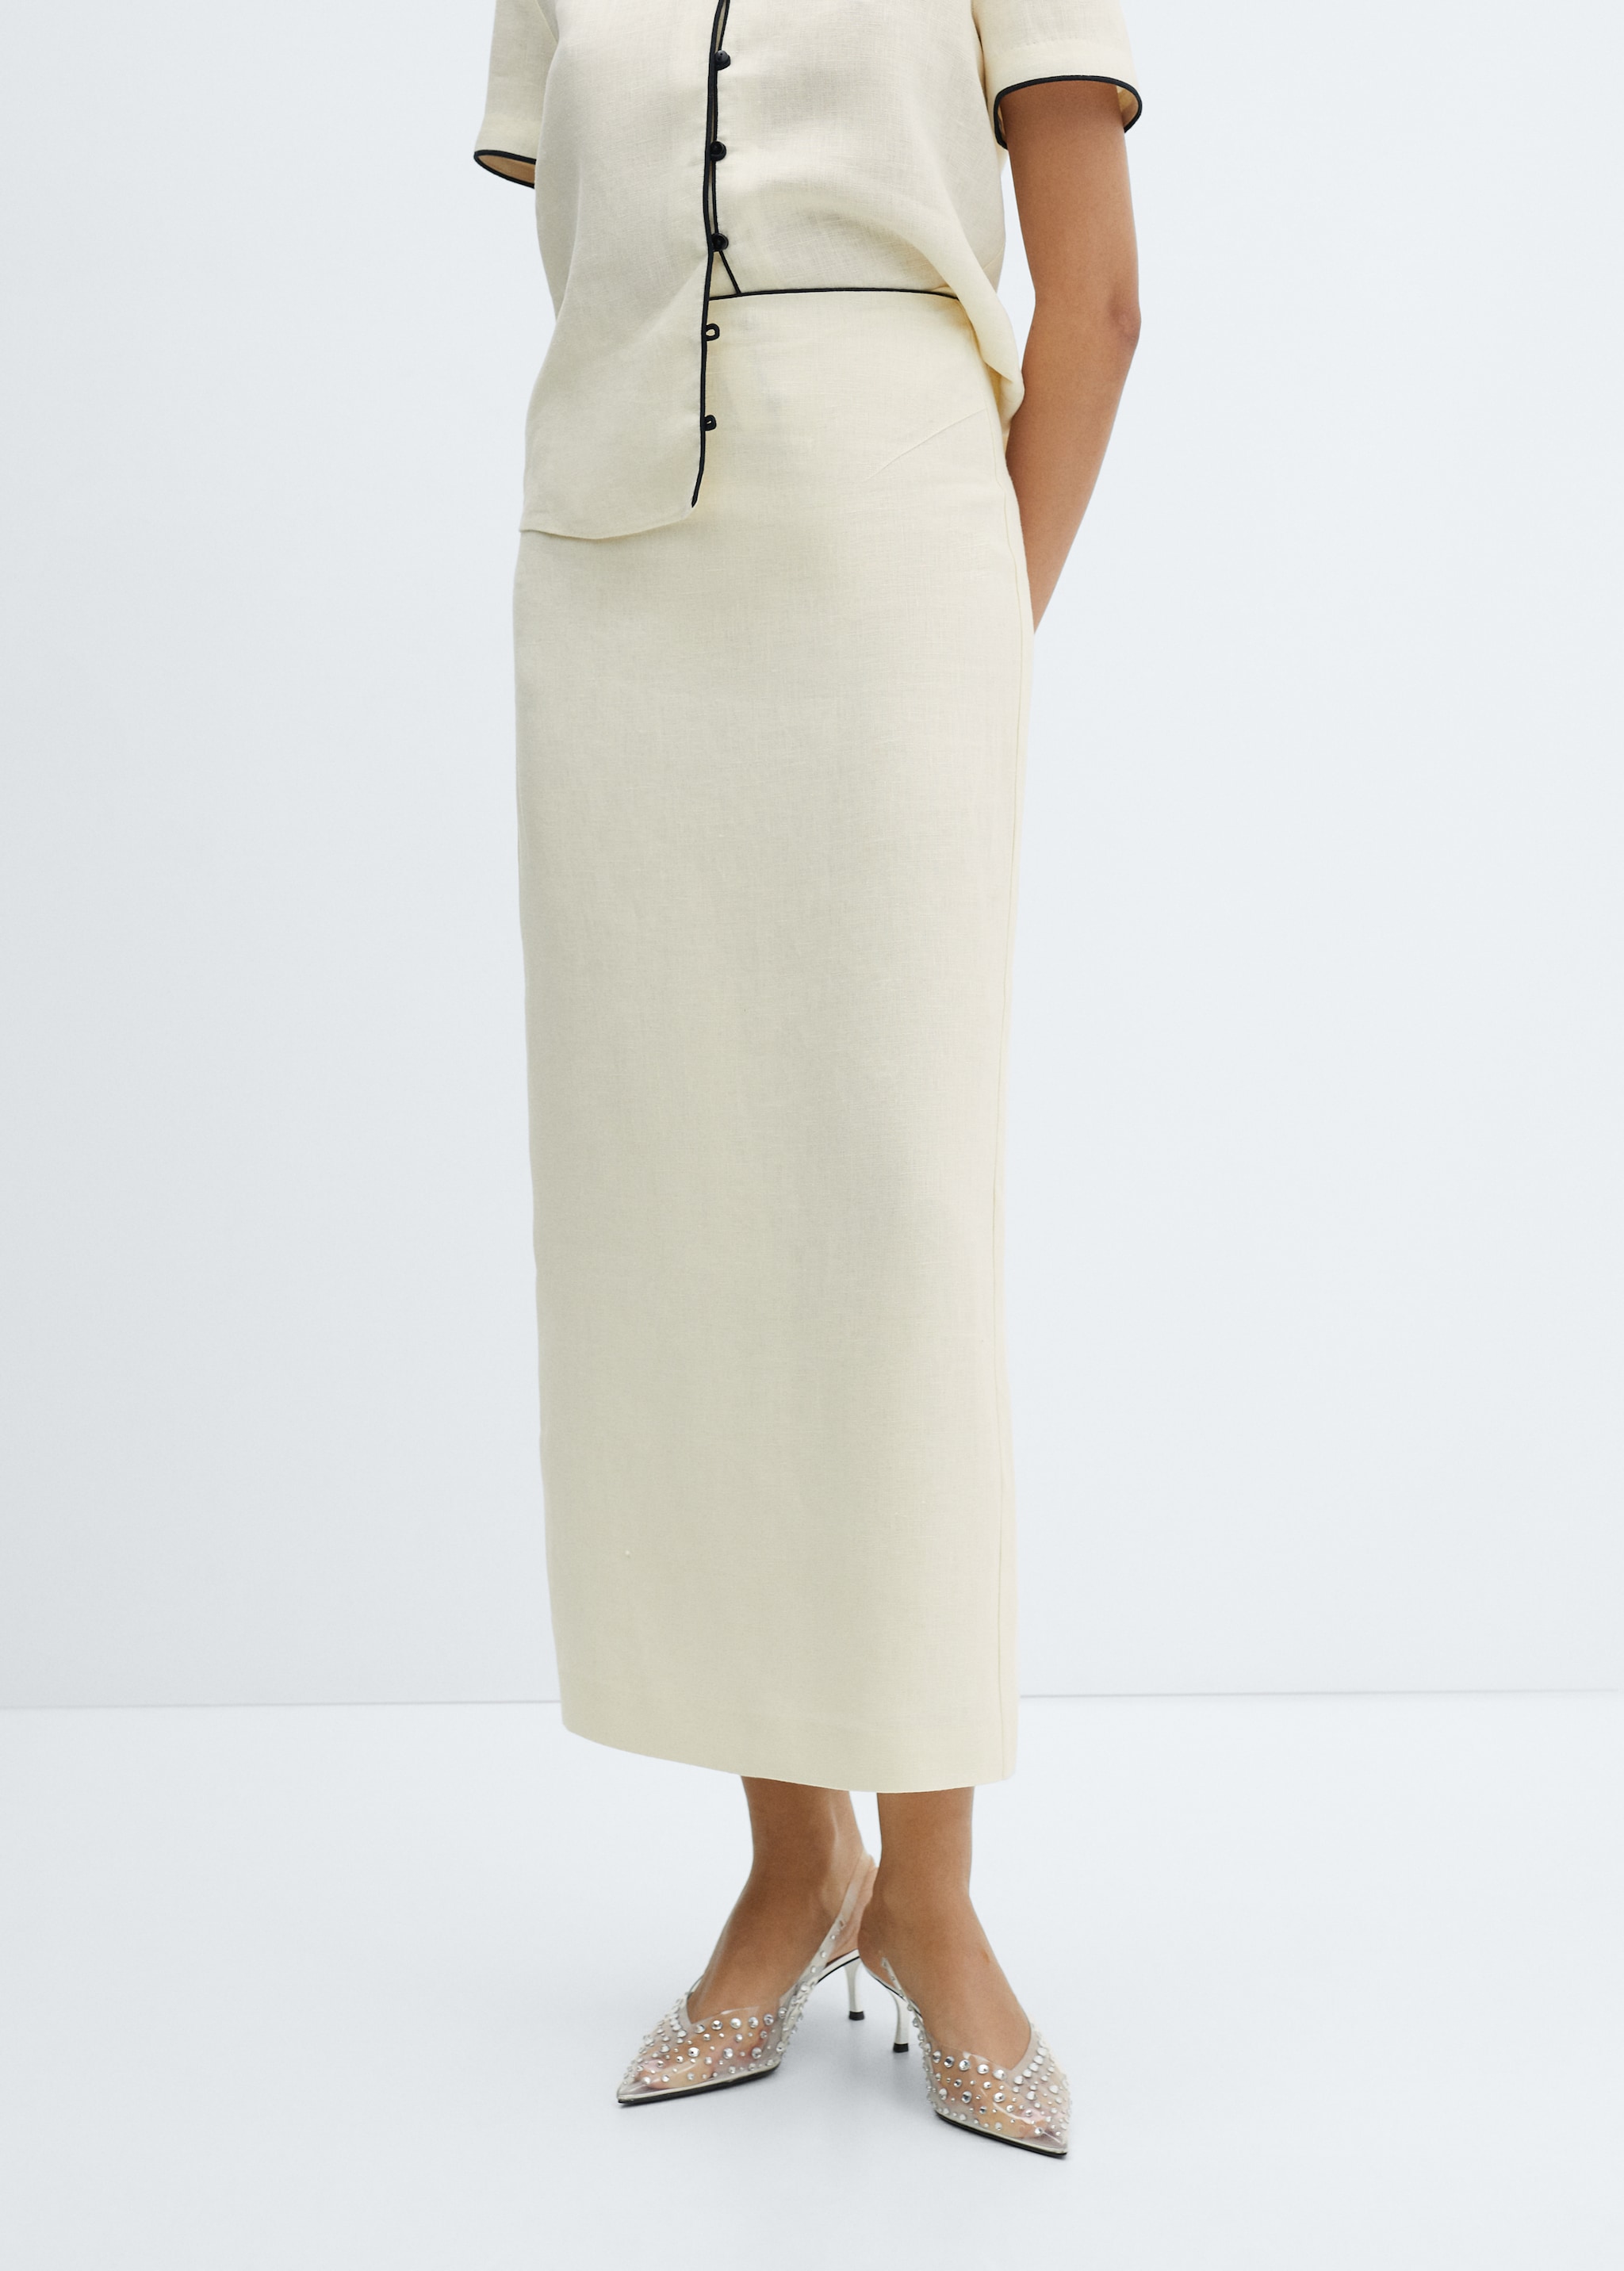 Linen skirt with slit - Medium plane